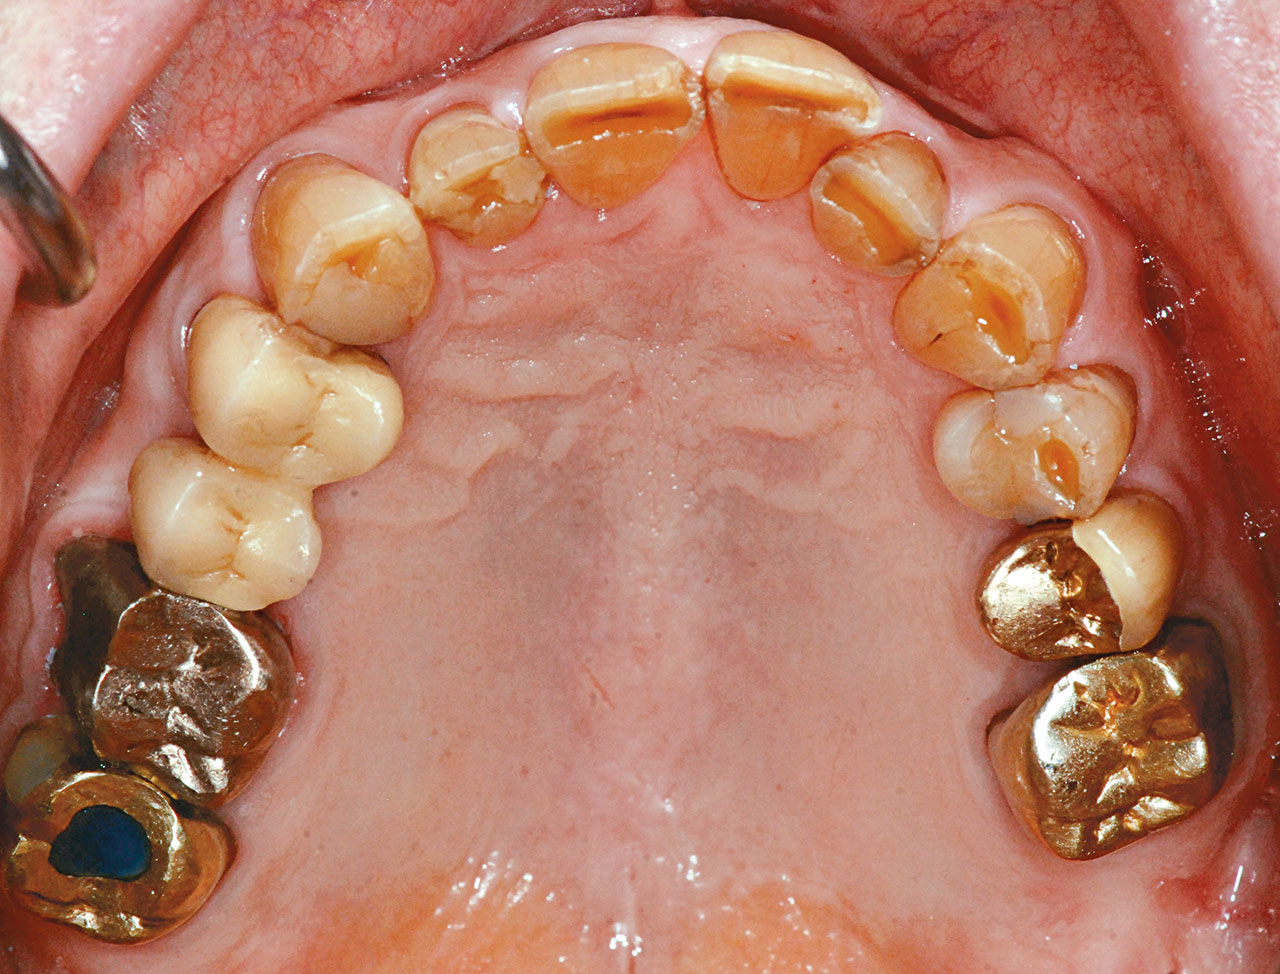 Abb. 7a Klinische Situation nach prothetischer Versorgung des prämolarisierten Zahnes 36 und des Zahnes 35 mit verblockten Goldkronen sowie Verblockung des hemisezierten Zahnes 47 mit dem Zahn 46.